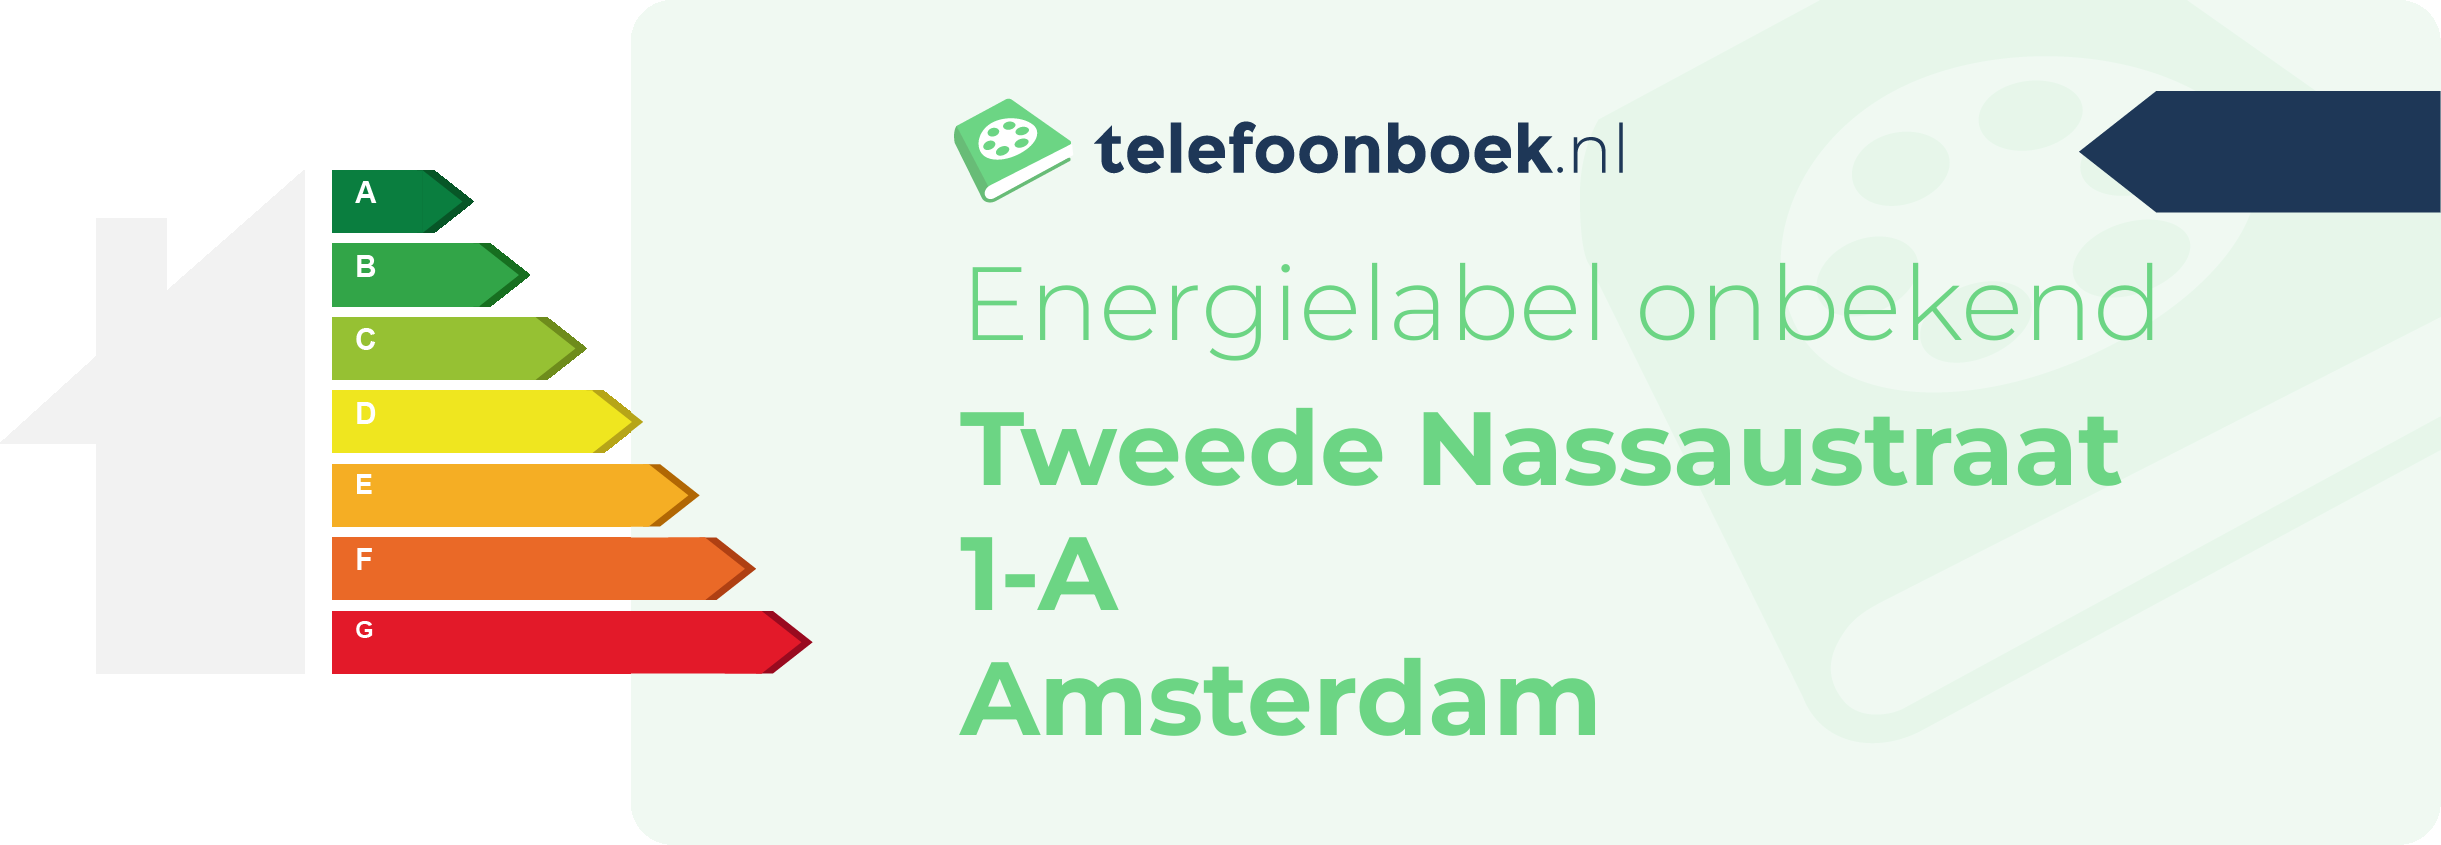 Energielabel Tweede Nassaustraat 1-A Amsterdam